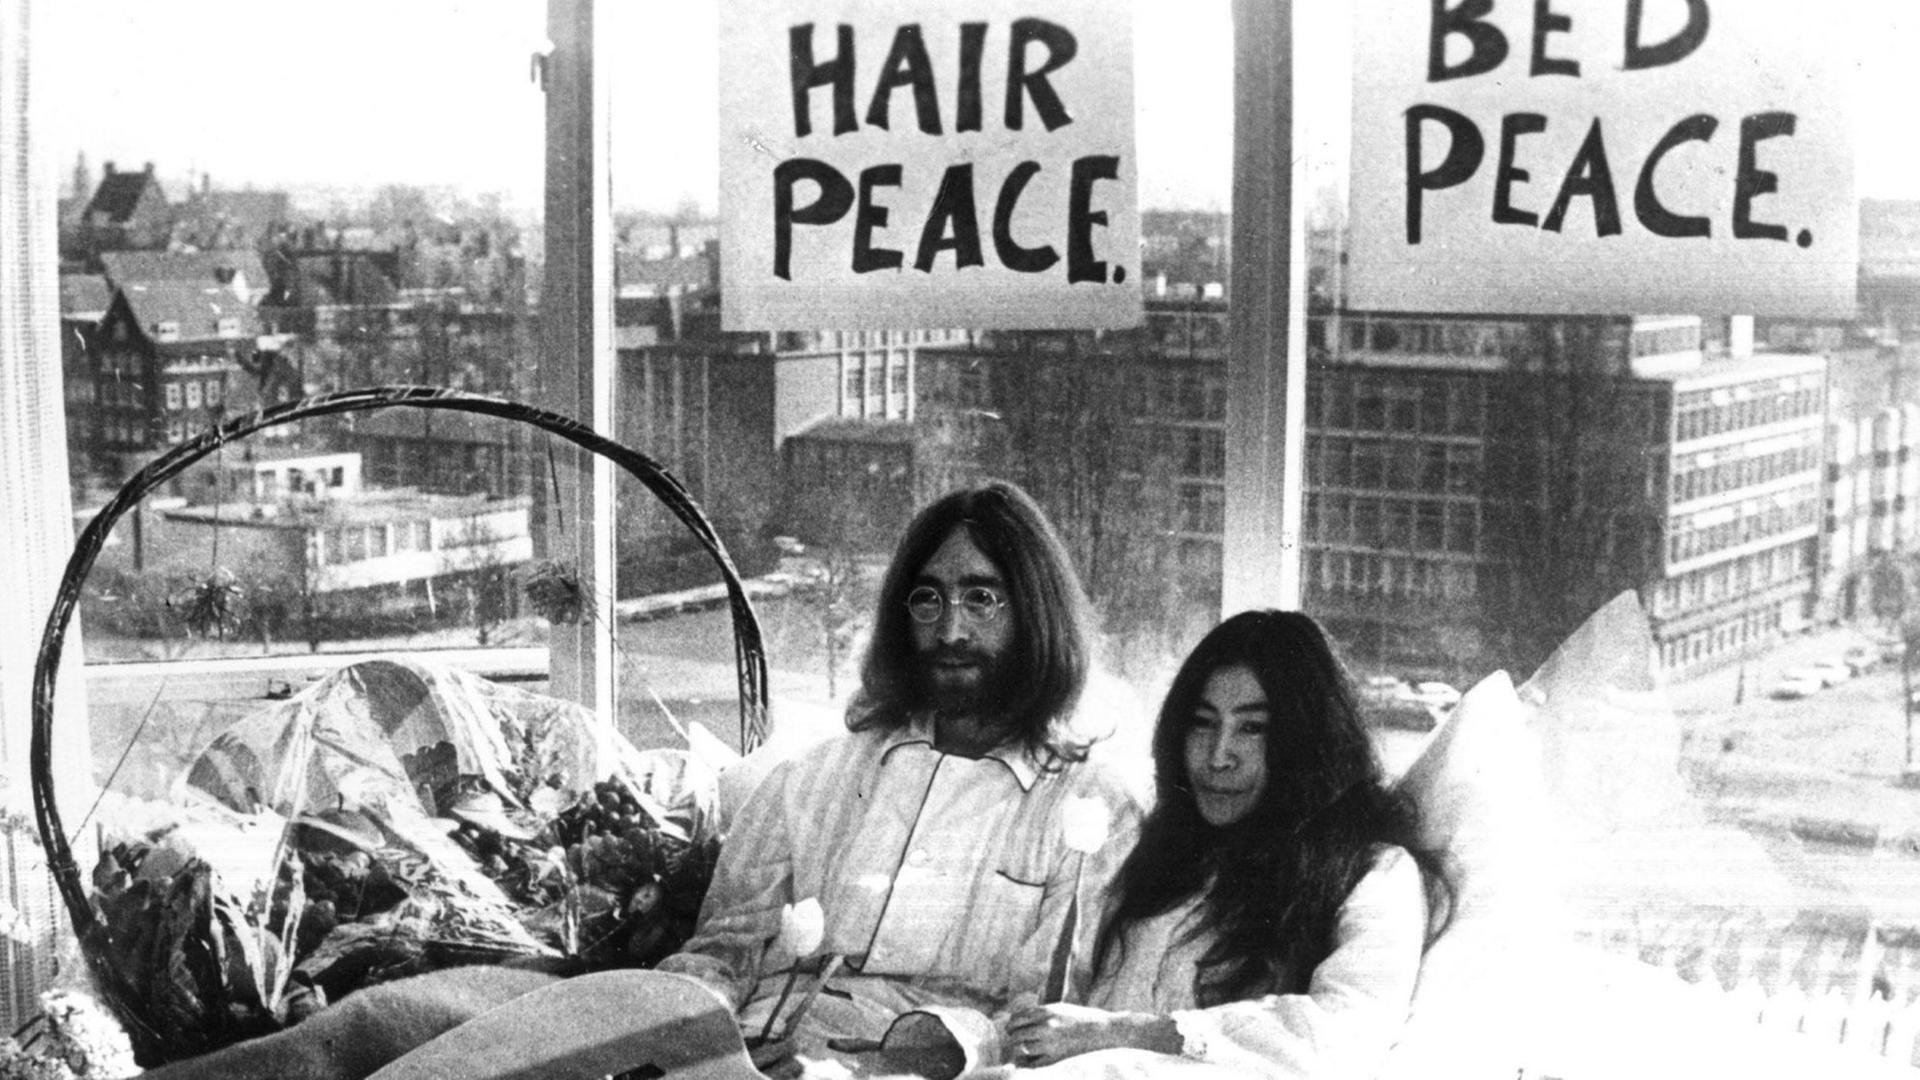 Yoko Ono und John Lennon sitzen im Bett. Über ihren Köpfen hängen Schilder mit der Aufschrift "Bed Peace" und "Hair Peace". Im Bett liegt eine Gitarre und Blumen.